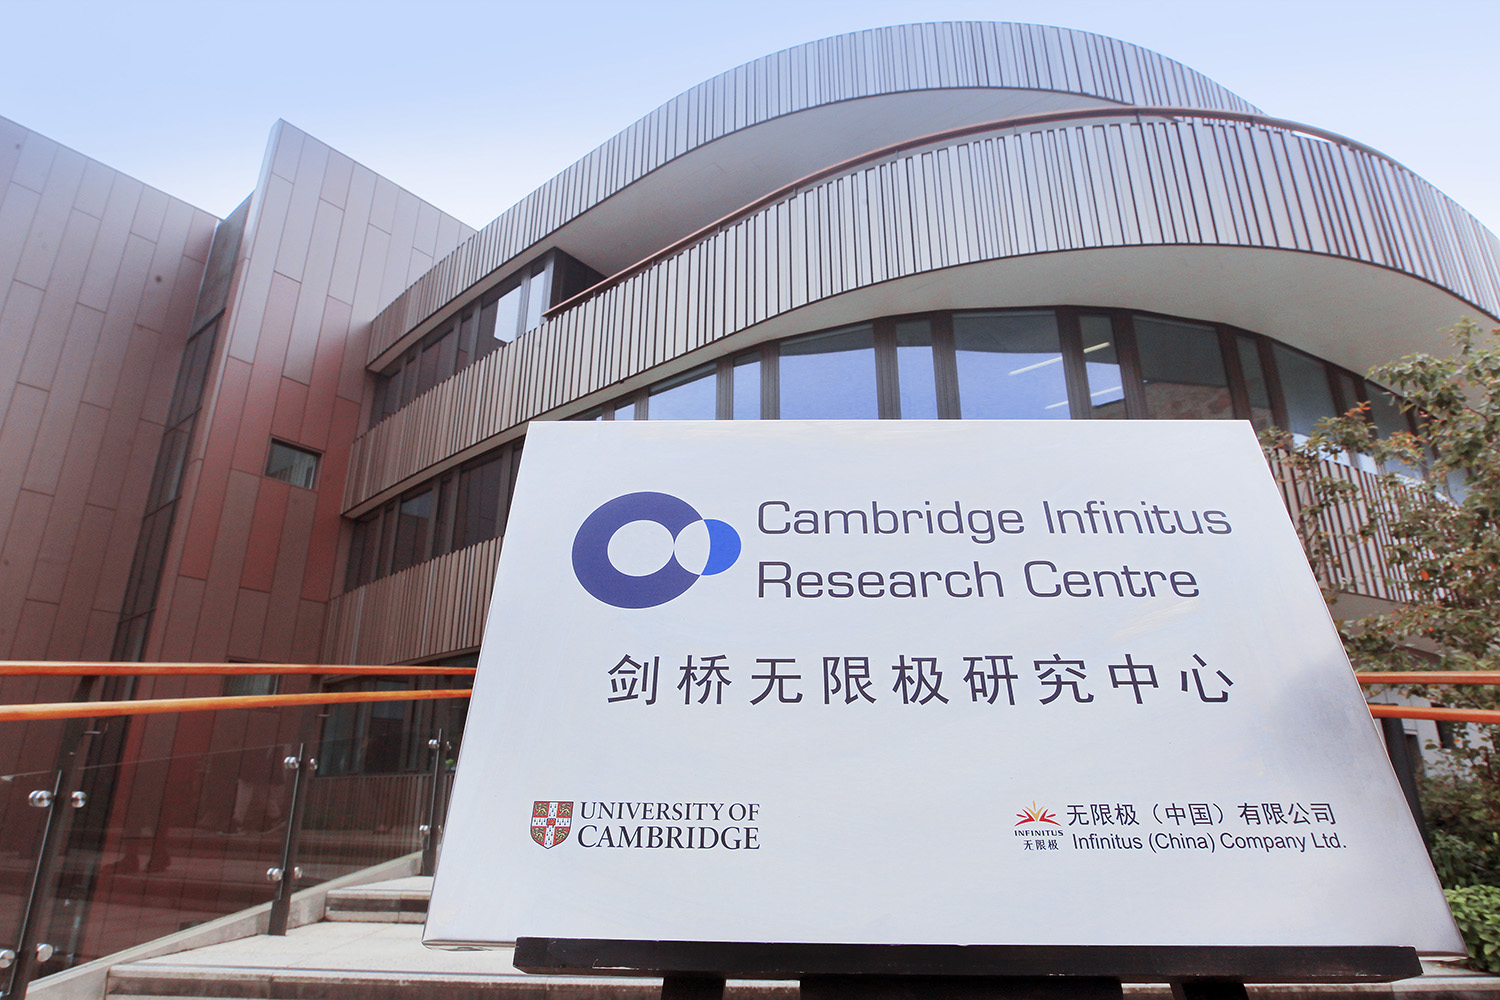 无限极与英国剑桥大学共建的“剑桥无限极研究中心”。(1)